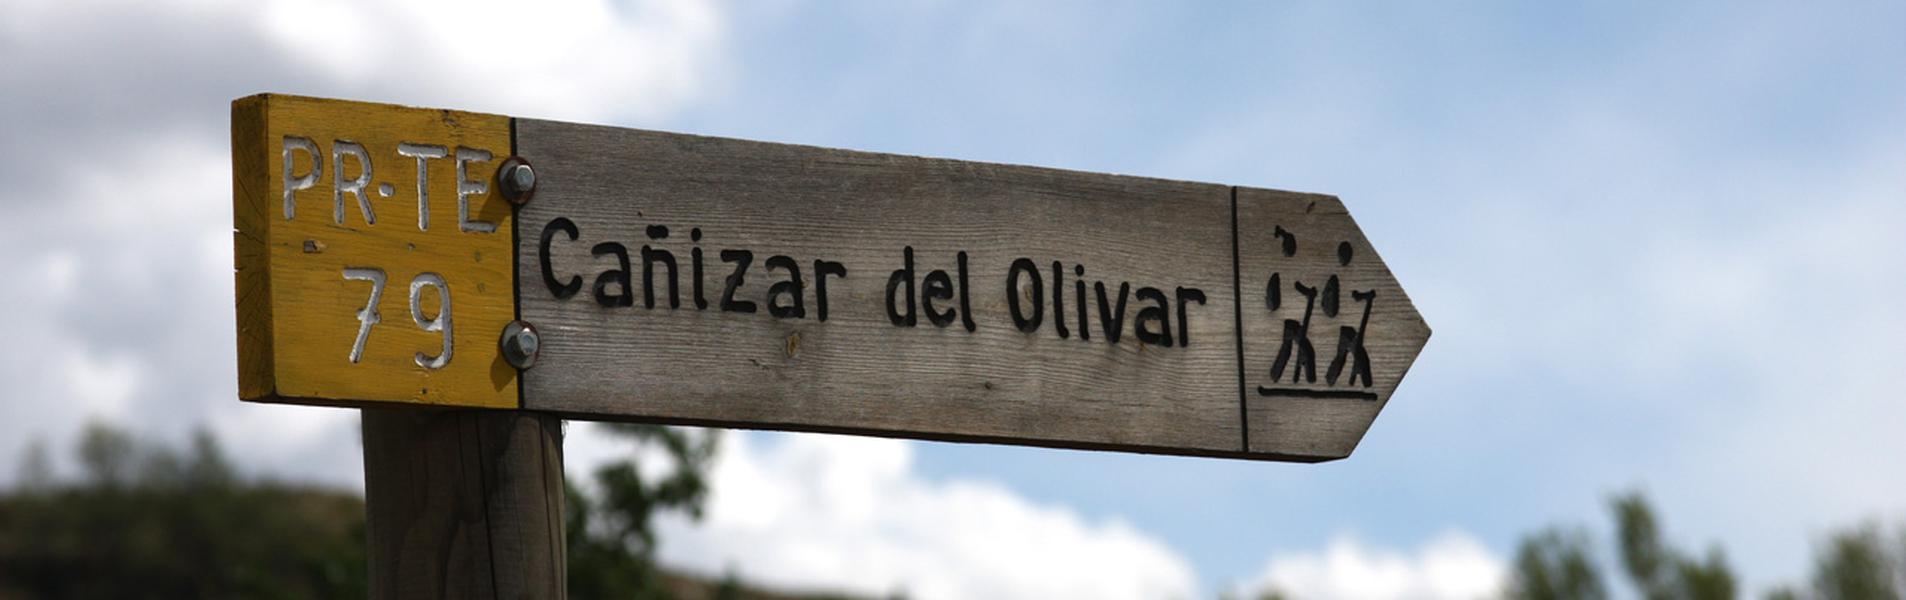 Cañizar del Olivar